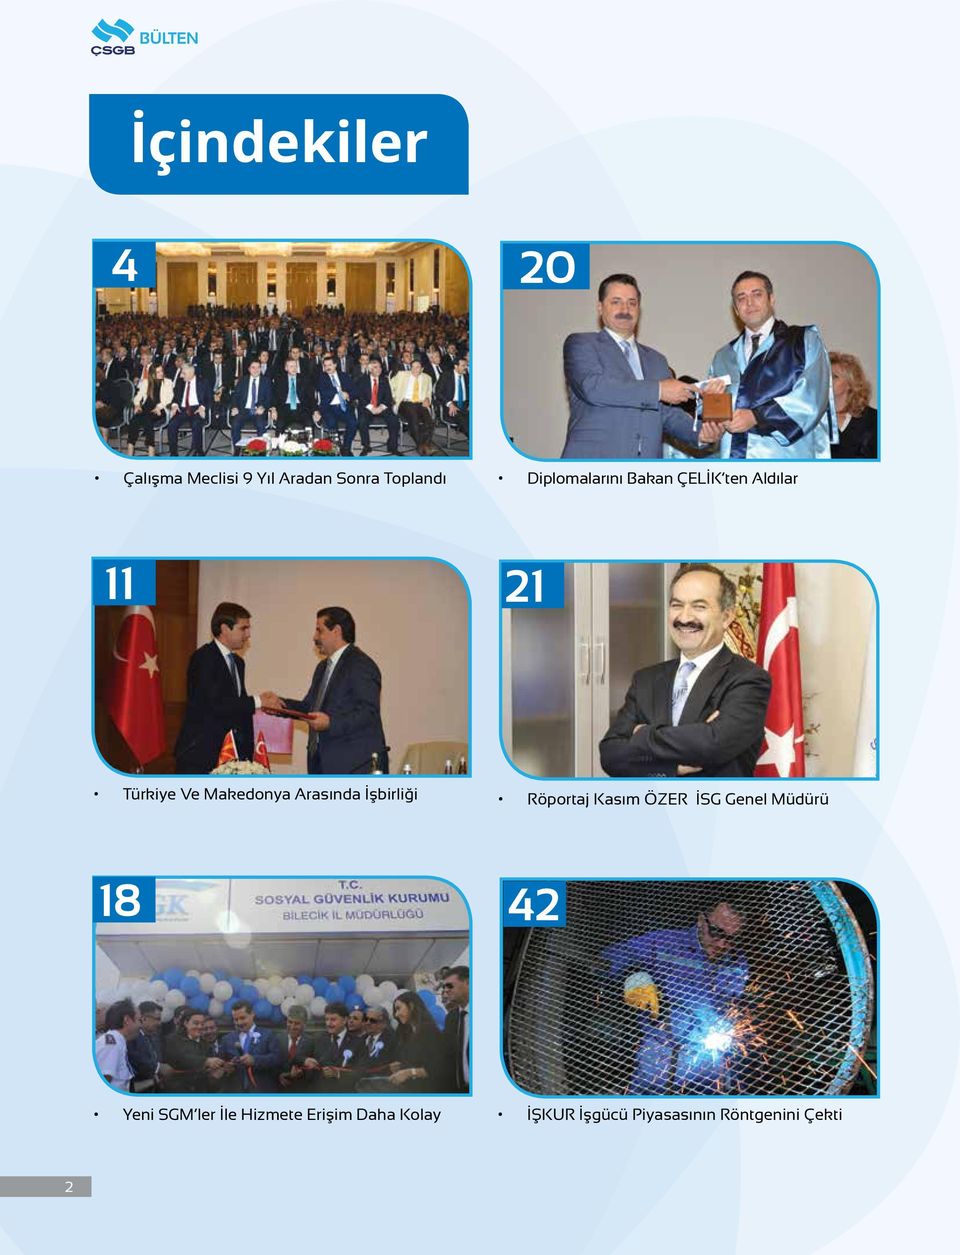 Türkiye Ve Makedonya Arasında İşbirliği Röportaj Kasım ÖZER İSG Genel Müdürü 18 42